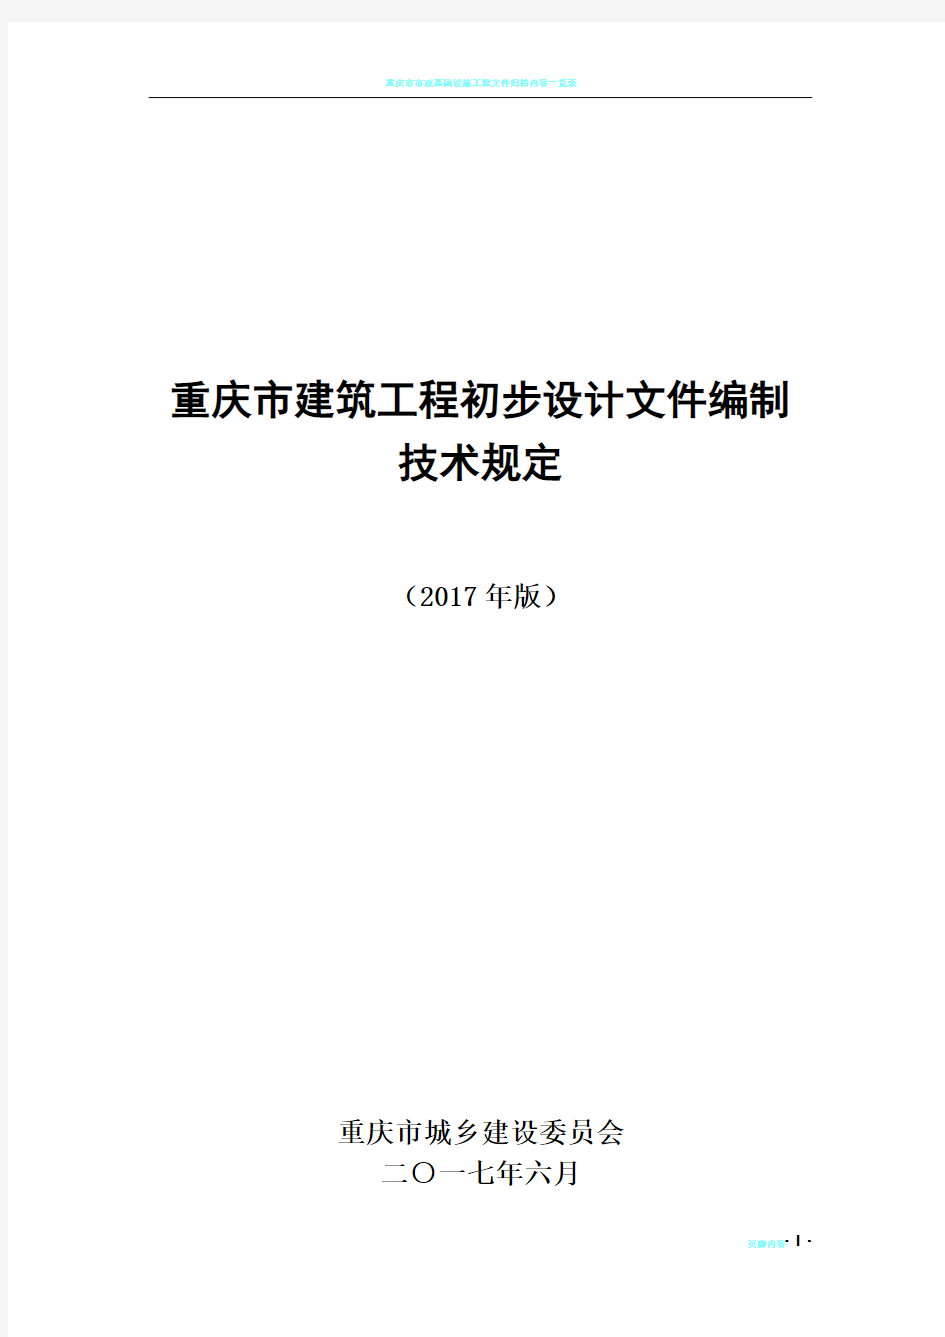 重庆市建筑工程初步设计文件编制技术规定(报批稿2017)